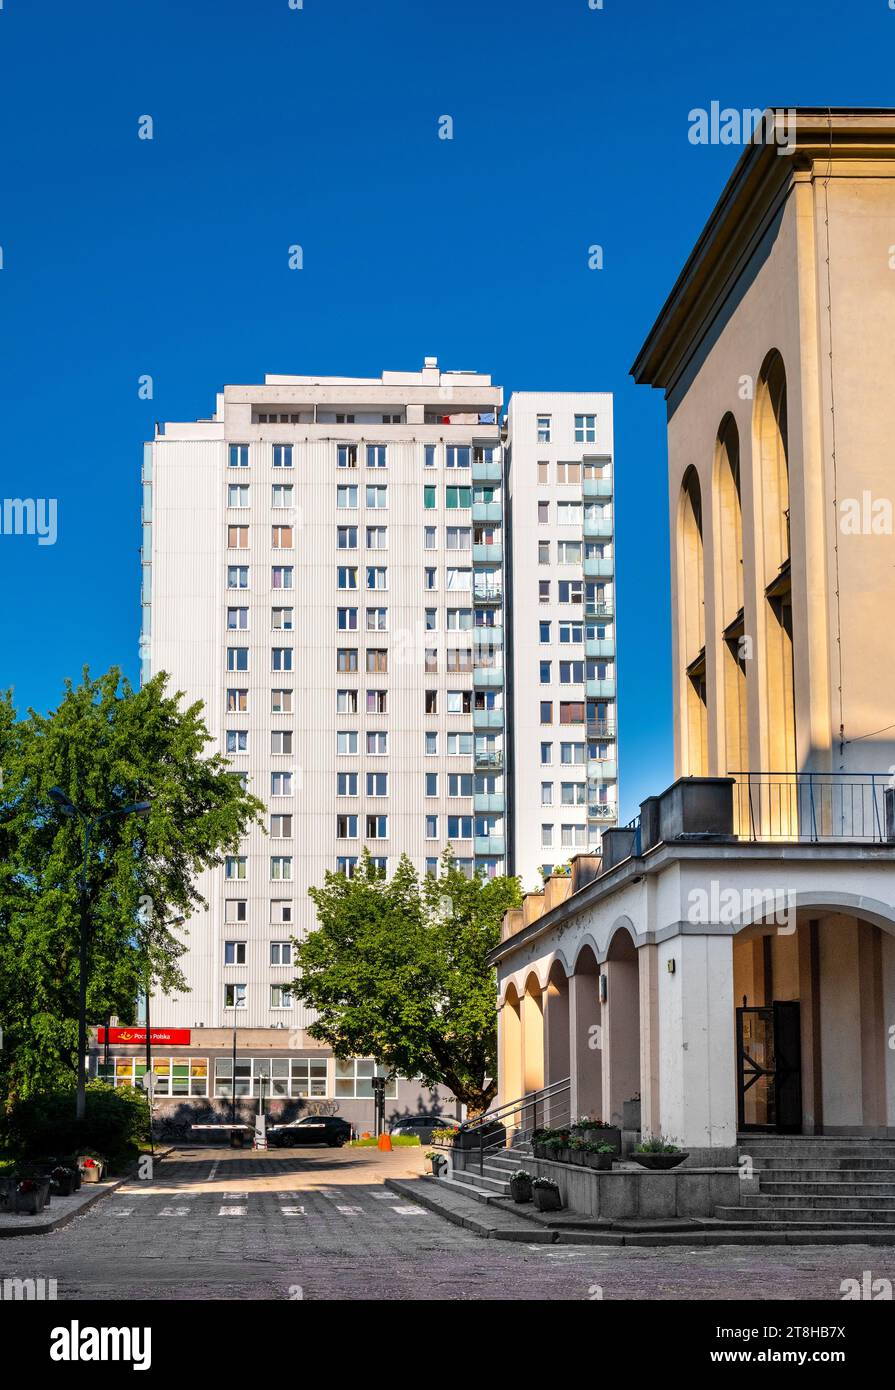 Warschau, Polen - 22. Juni 2021: Kommunistisches großes Wohngebäude in der Bruna-Straße mit Institut für landwirtschaftliche und Lebensmittelbiotechnologie Stockfoto